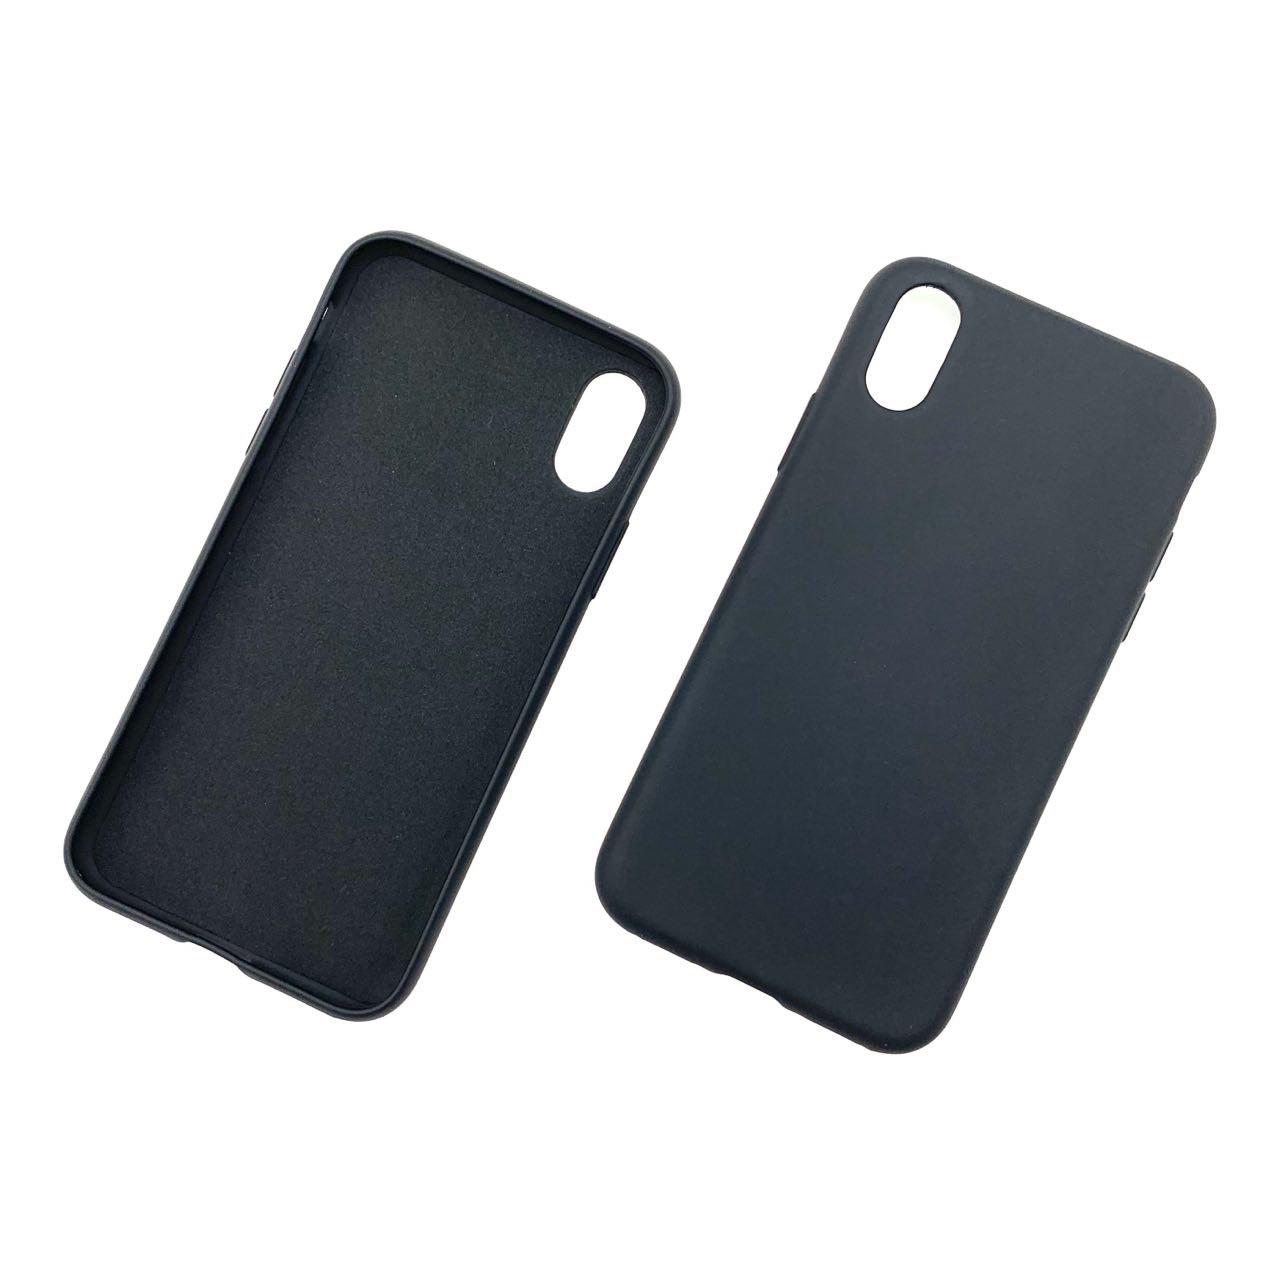 Чехол накладка для APPLE iPhone X, XS, силикон, цвет черный.